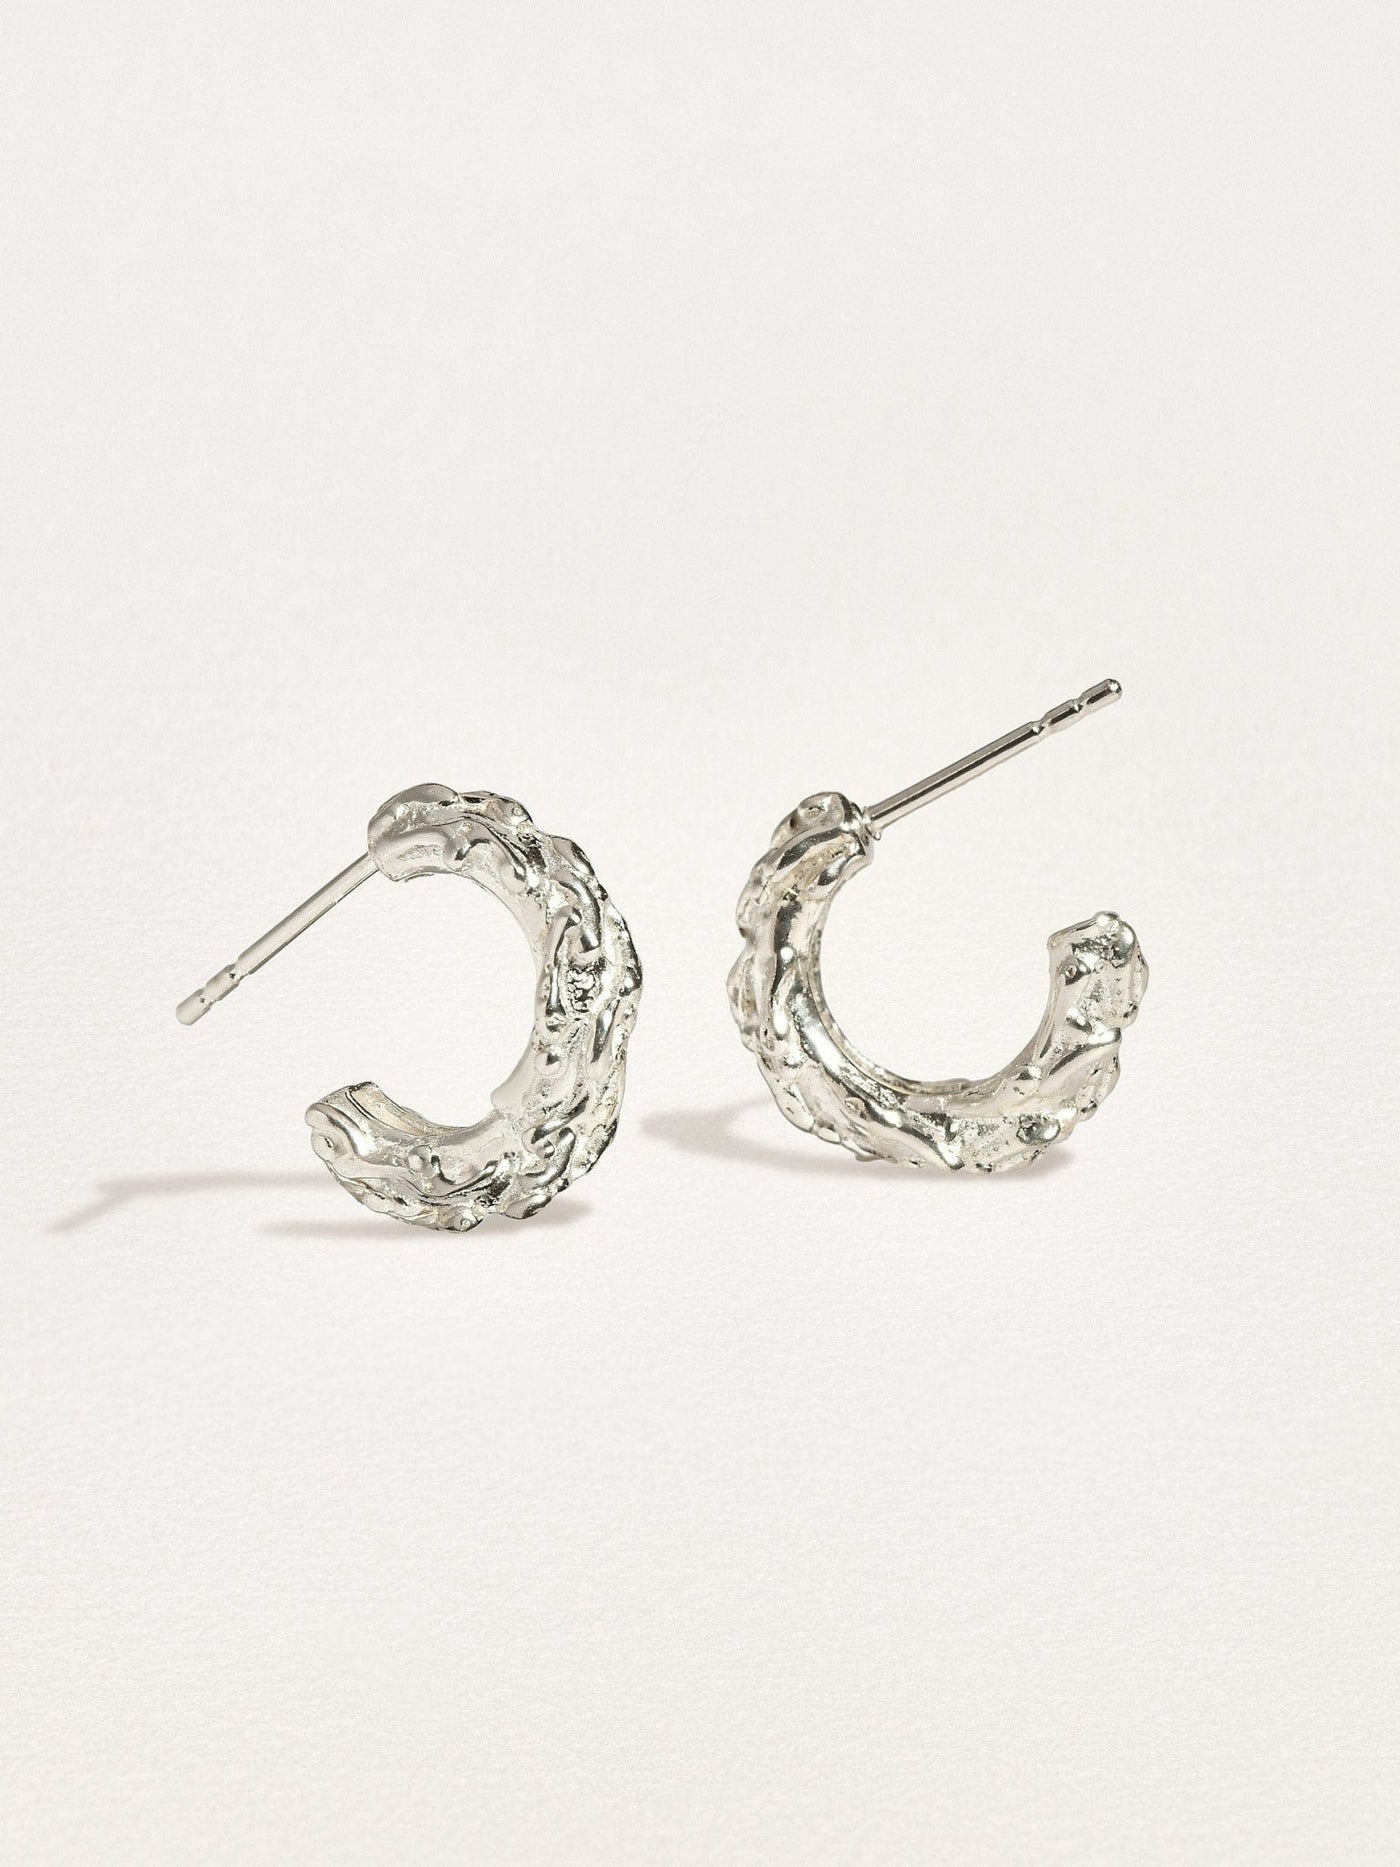 Groessa Half Hoop Earrings - 925 Sterling SilverBridesmaid GiftDainty EarringsLunai Jewelry